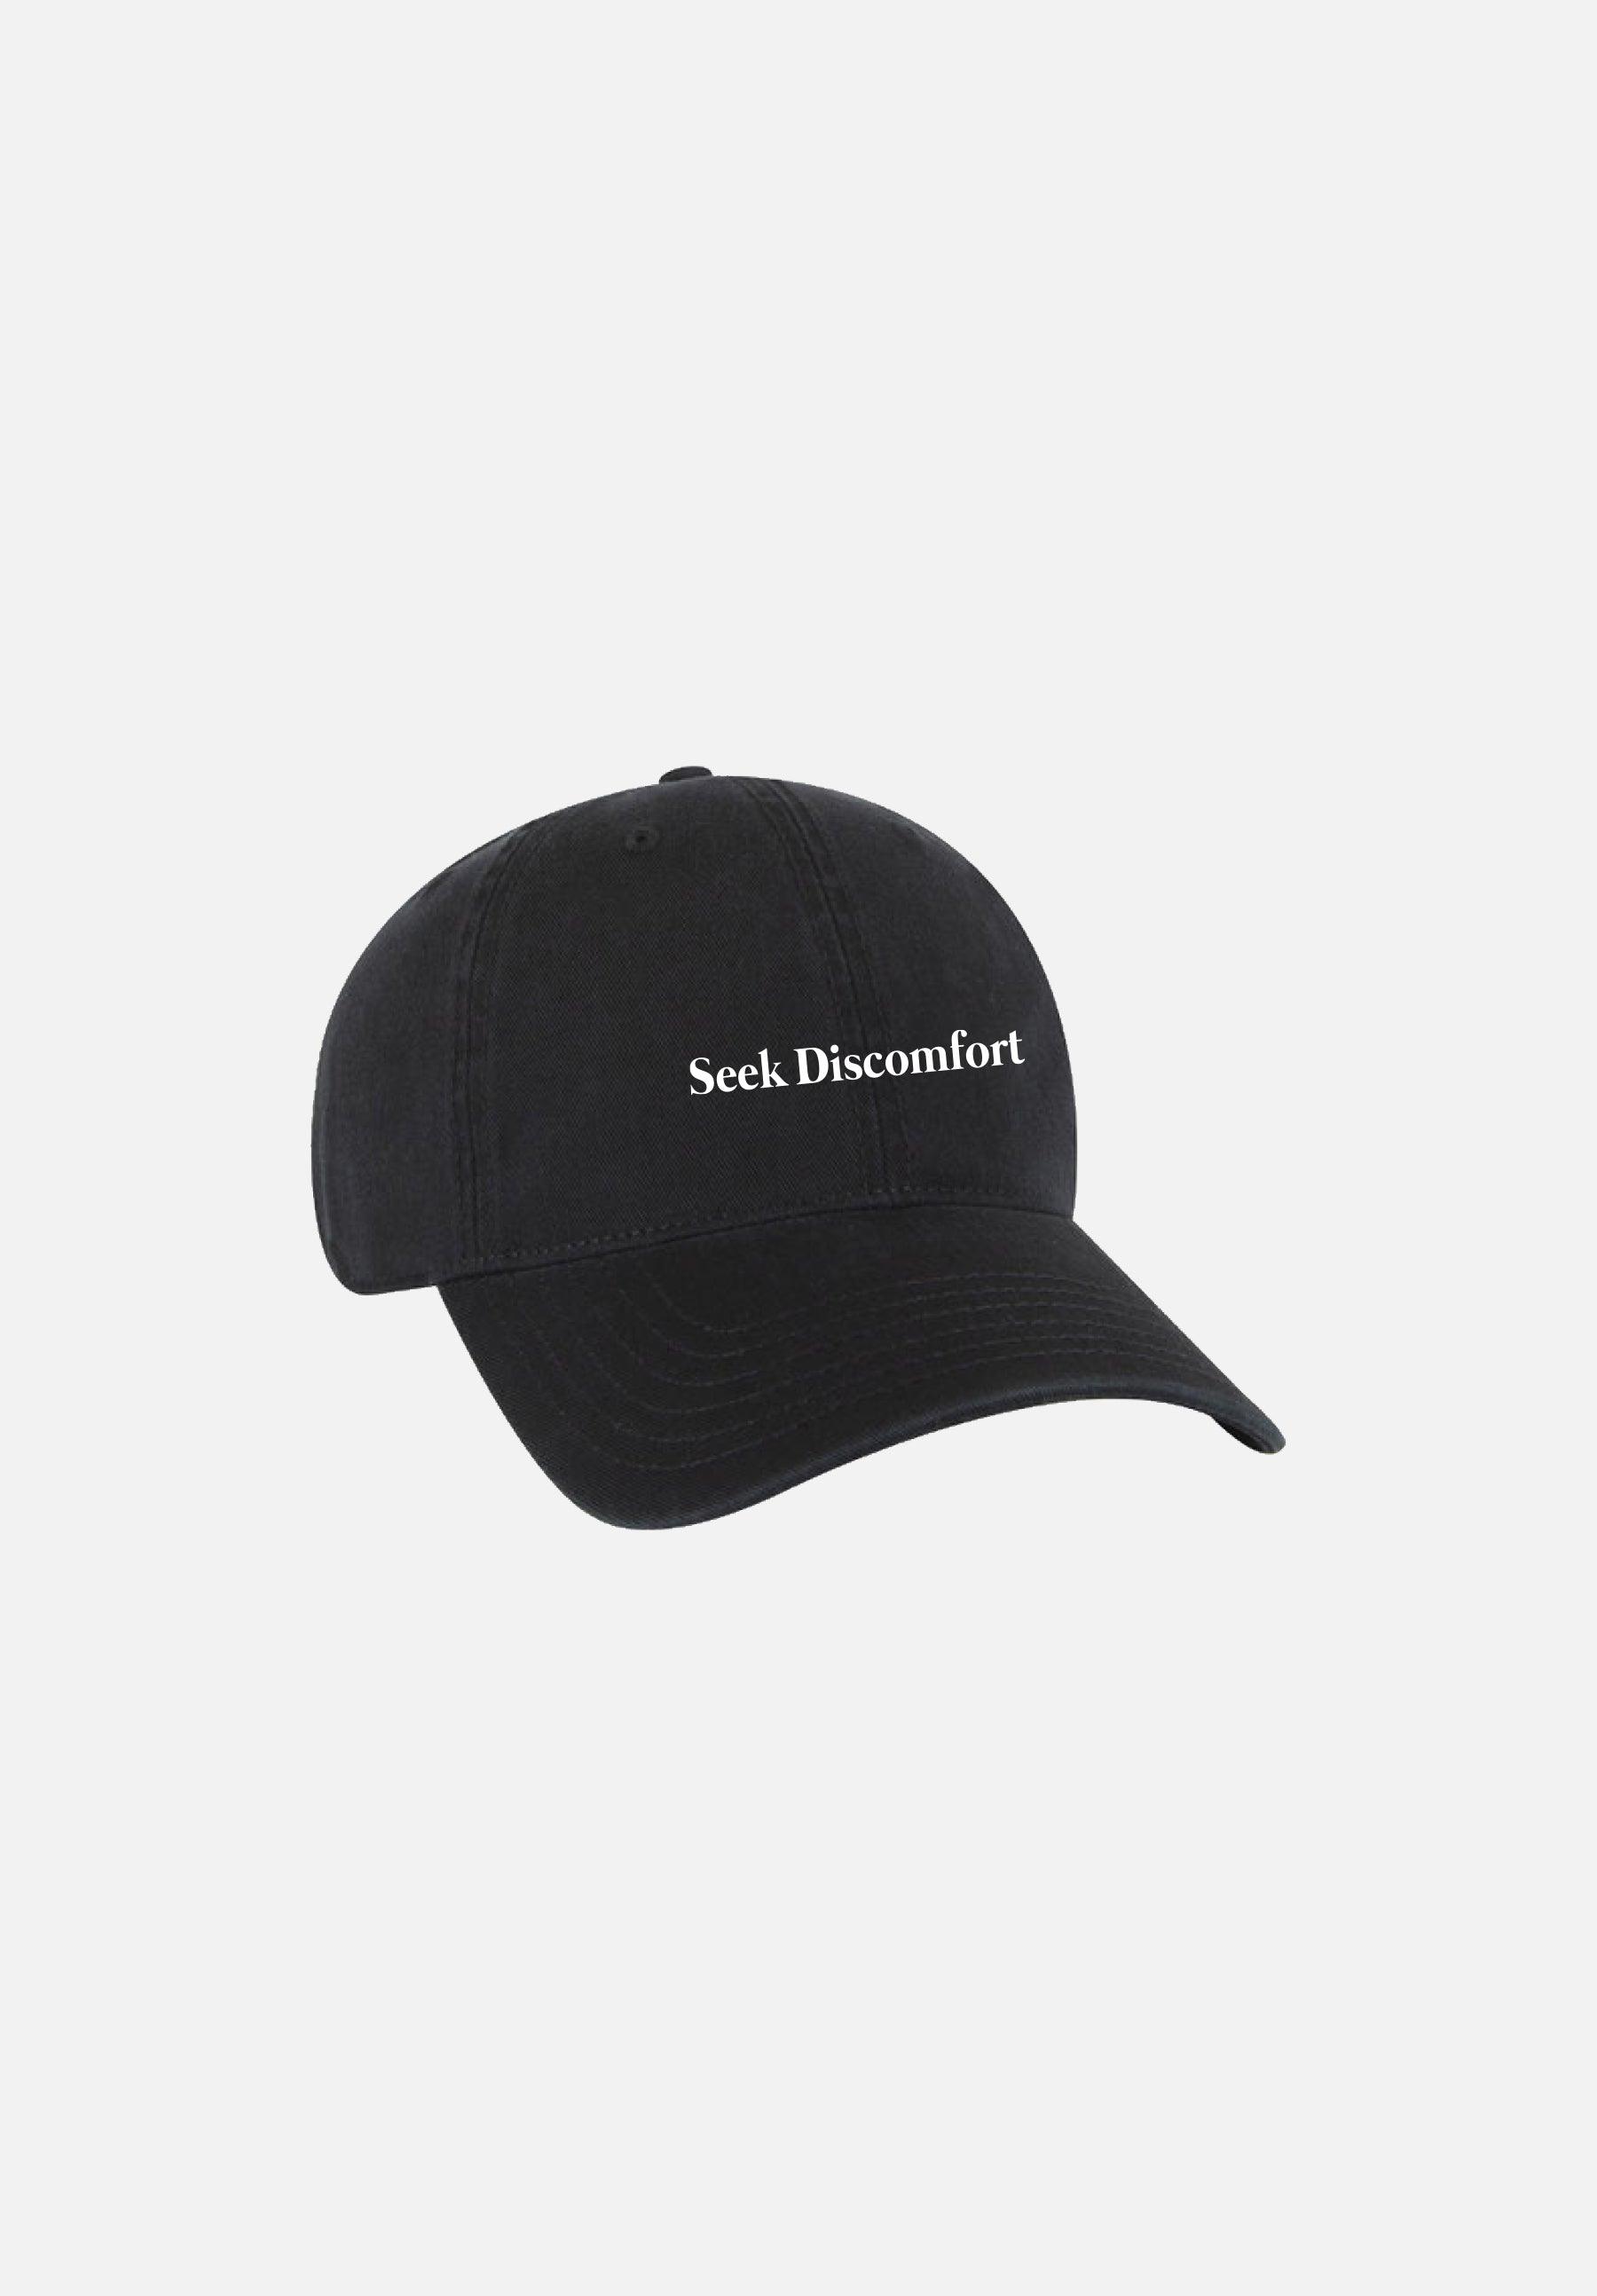 Hats – Seek Discomfort